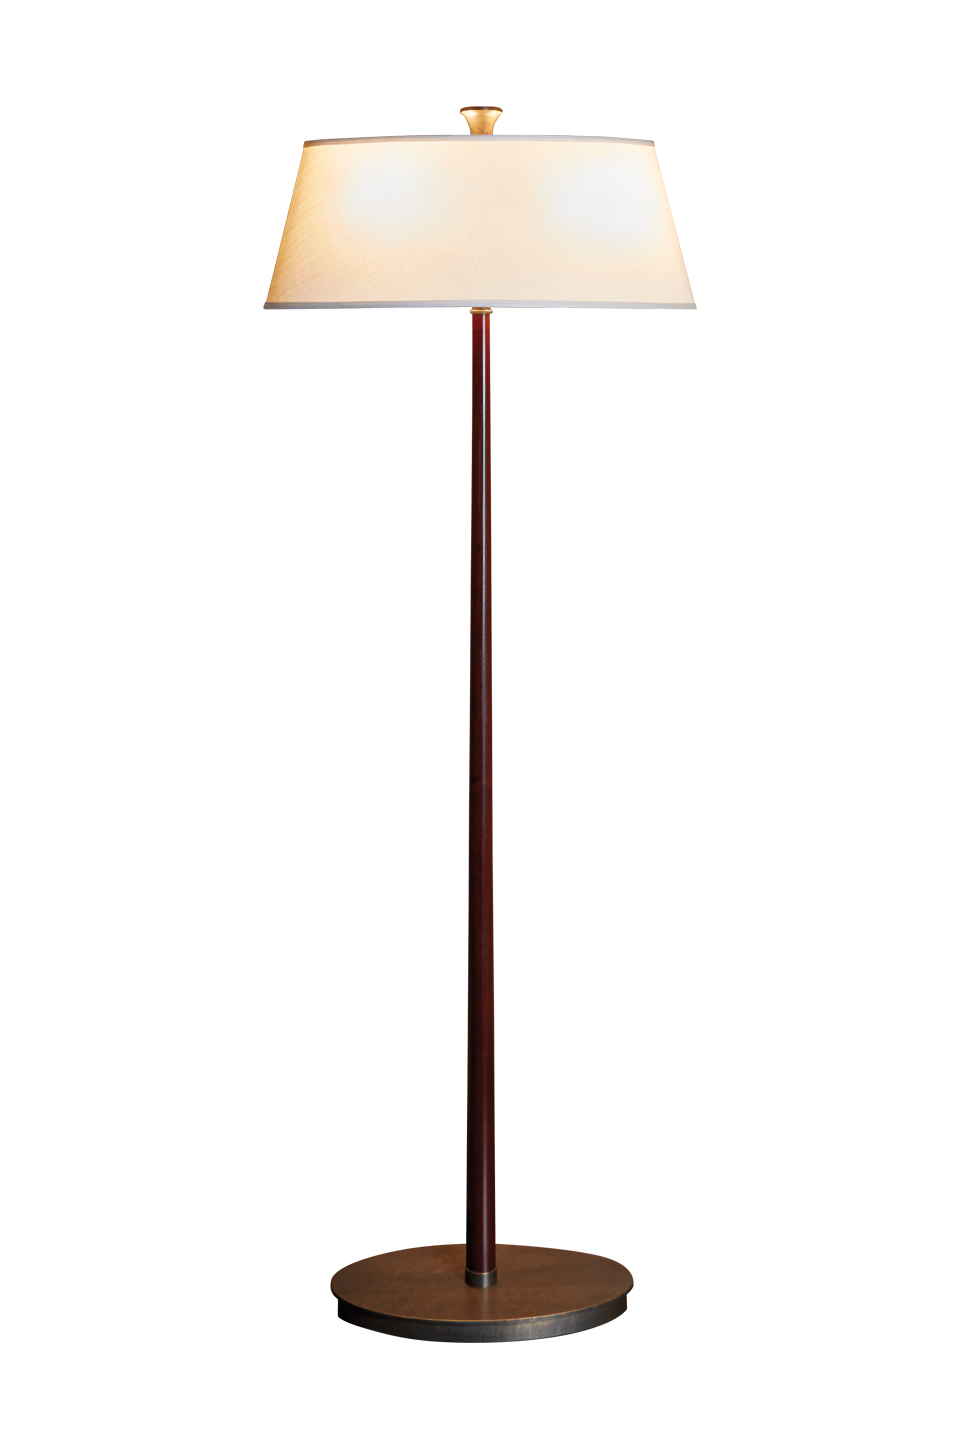 Rita è una lampada da terra a LED con struttura in legno, base in bronzo e paralume in lino, cotone o seta bordata a mano, del catalogo di Promemoria | Promemoria